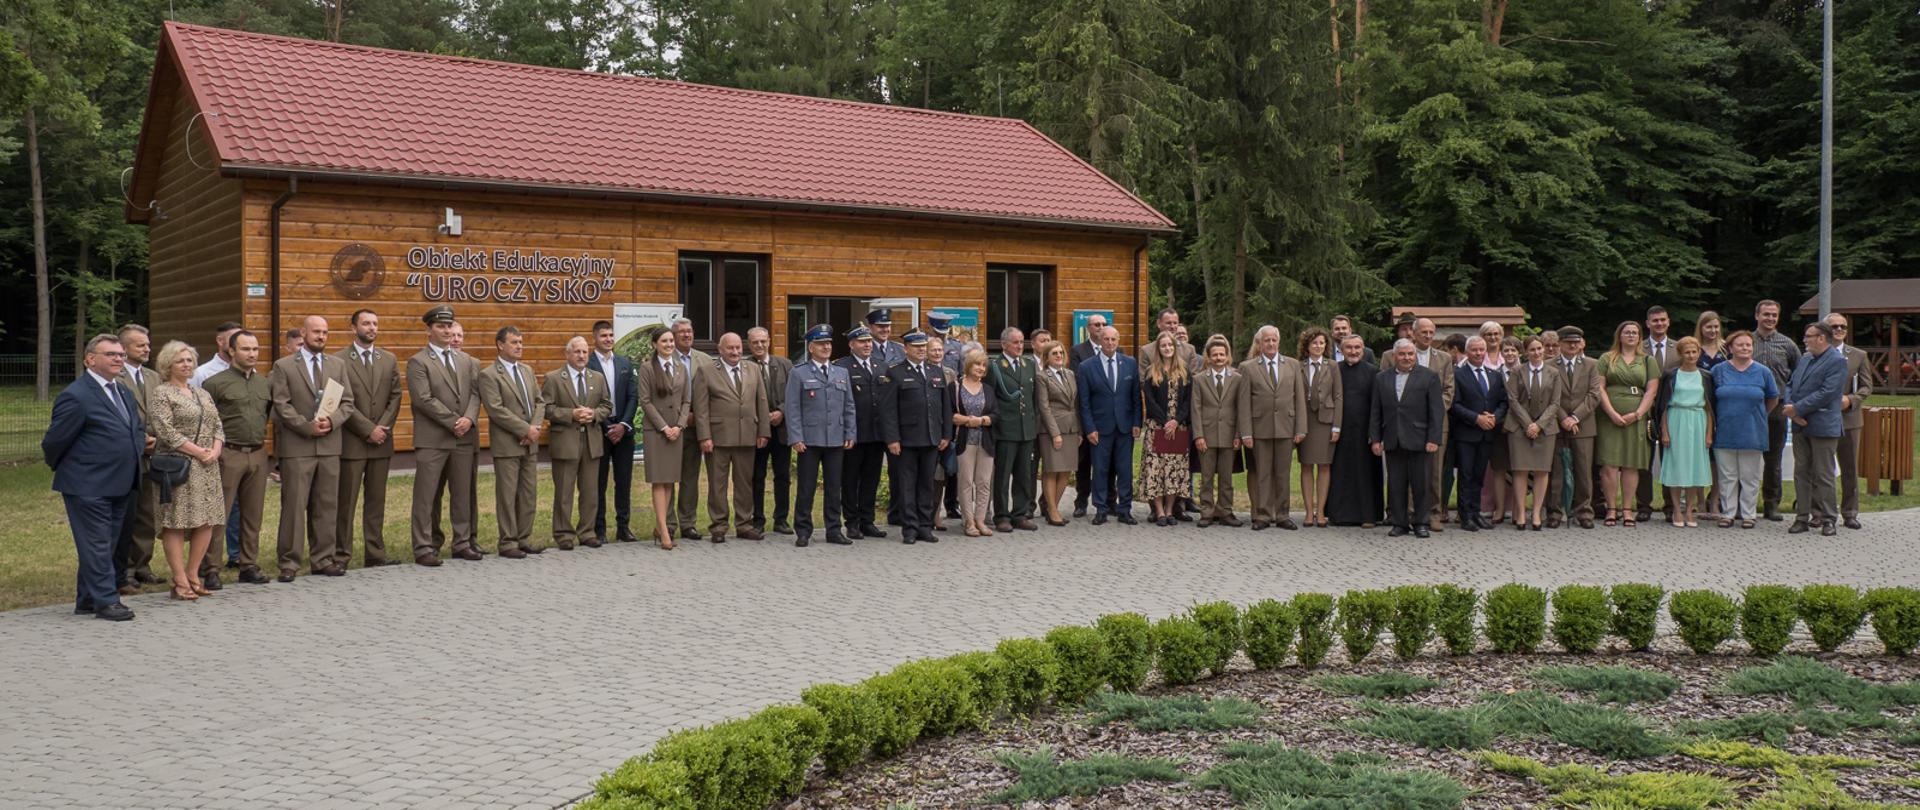 Oficjalne otwarcie obiektu edukacyjnego Nadleśnictwa Kraśnik - "Uroczysko"